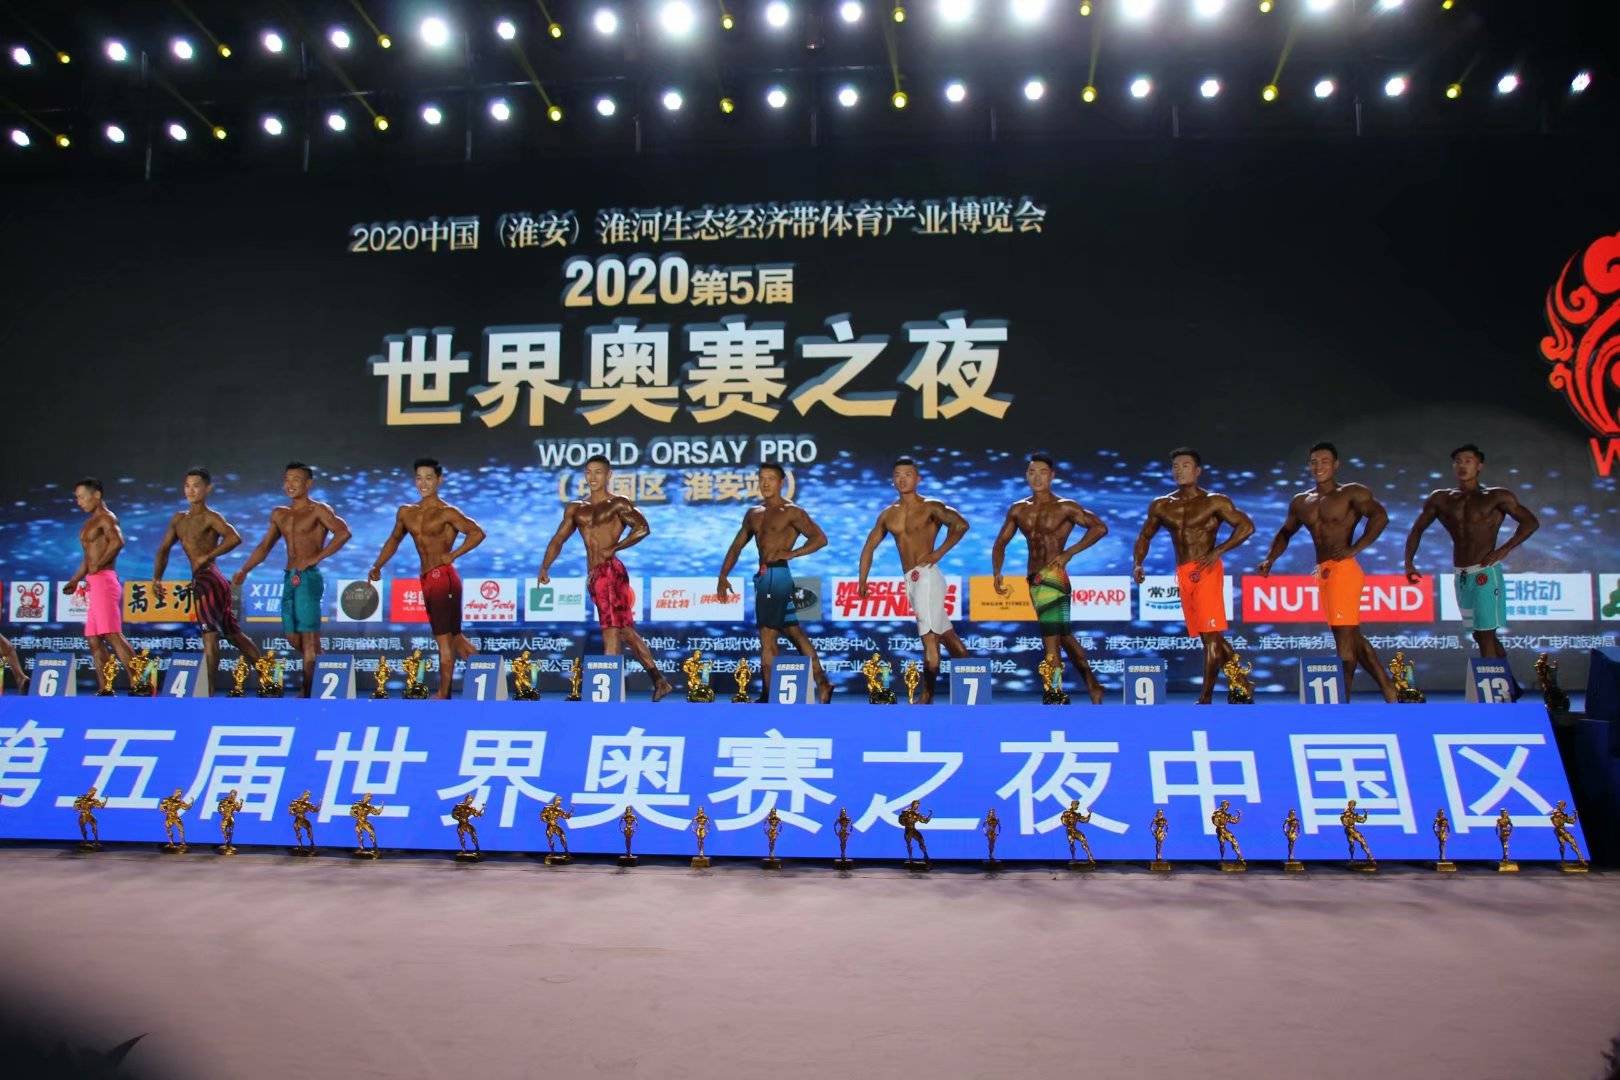 图为2020世界奥赛之夜(中国区淮安站) 男子健体比赛